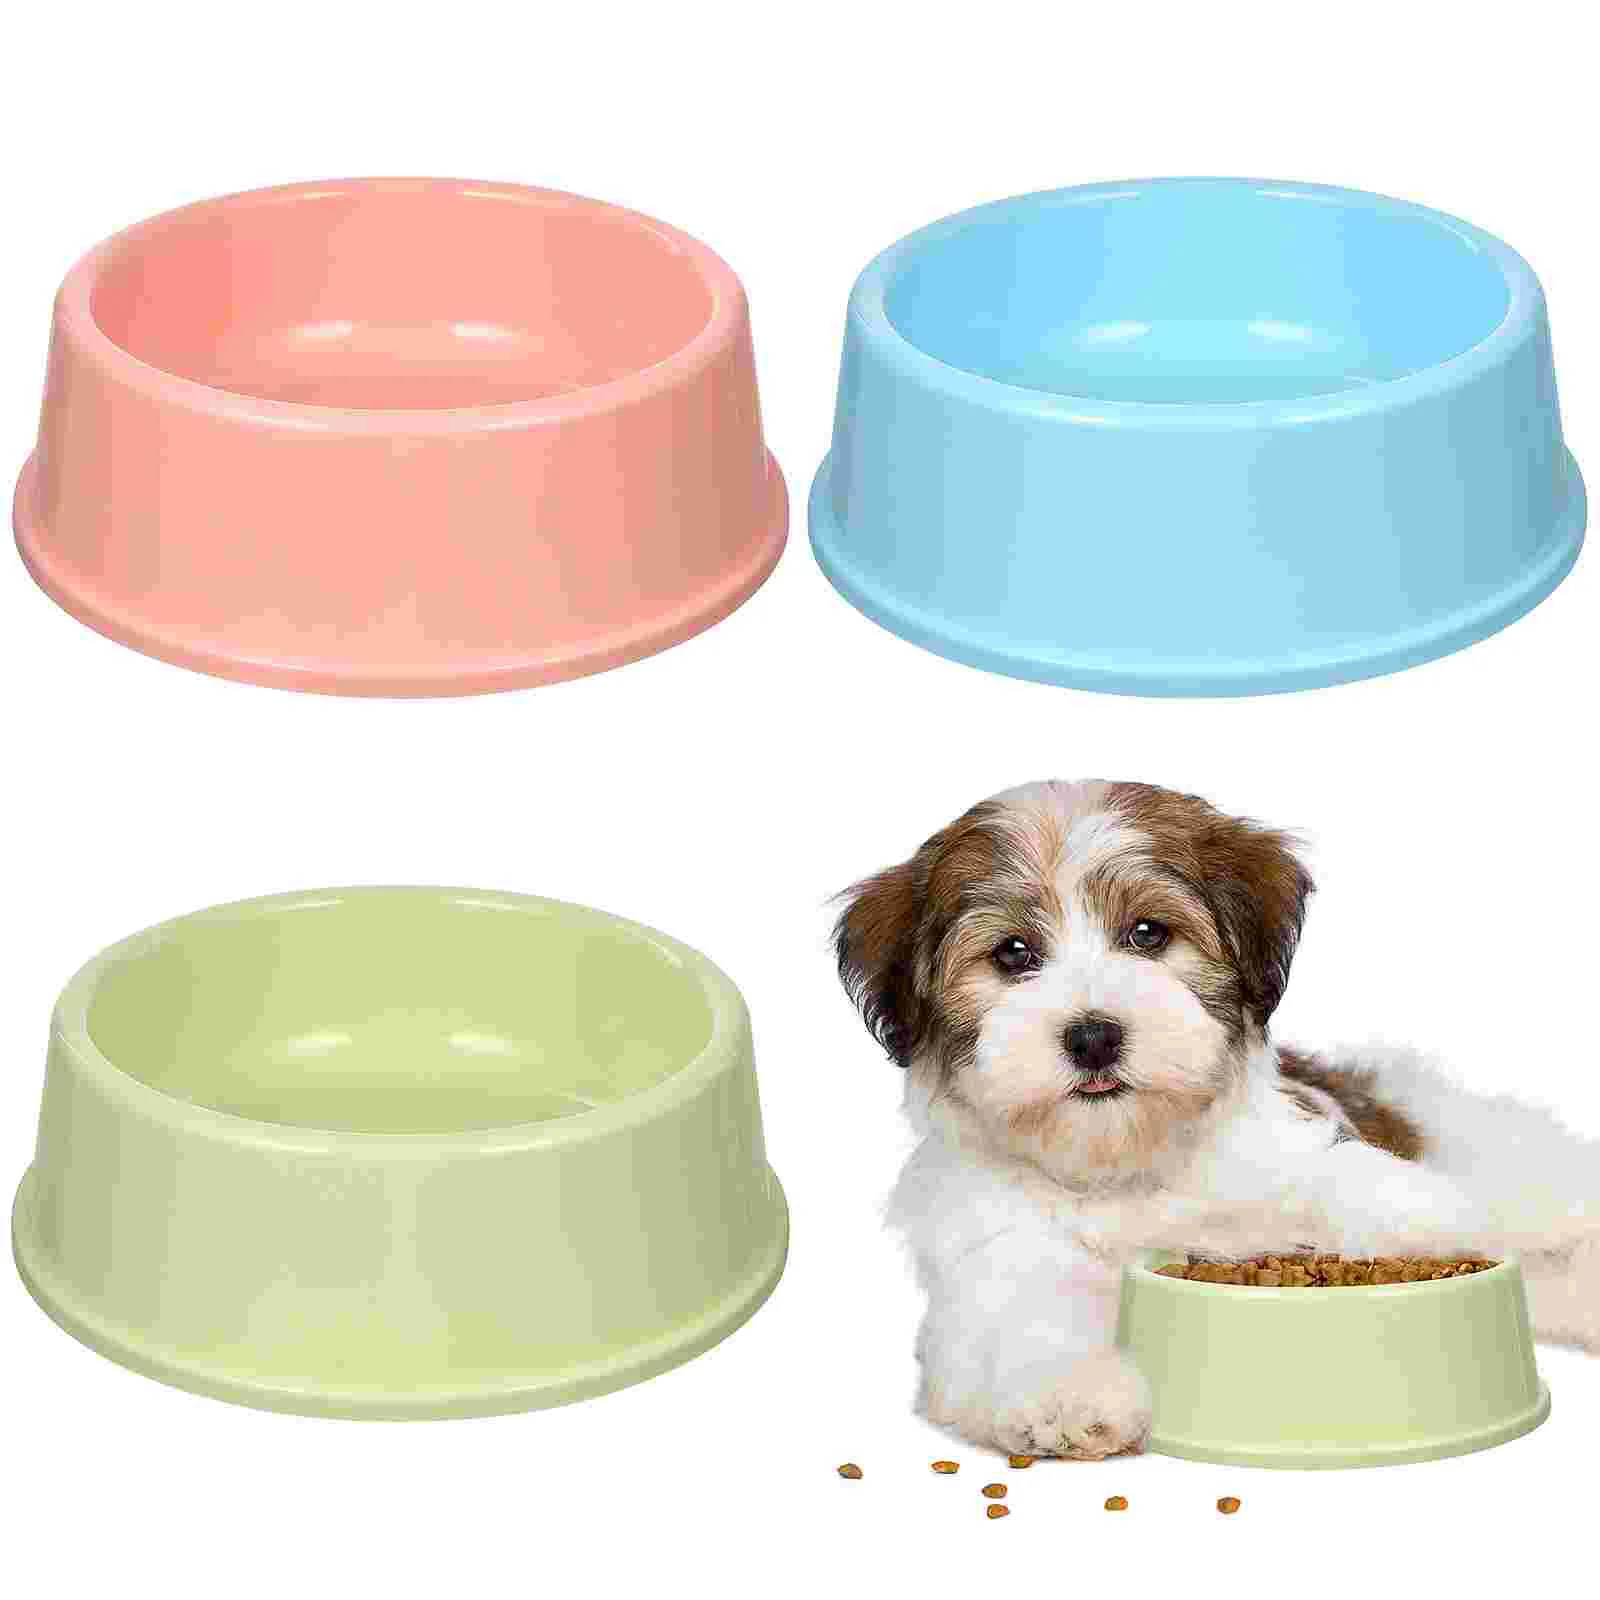 

3pcs Pet Bowl Puppy Dog Pals Party Supplies Large Rabbits Small Dog Bowl Dog Water Bowl Plastic Bowls Dog Bowls